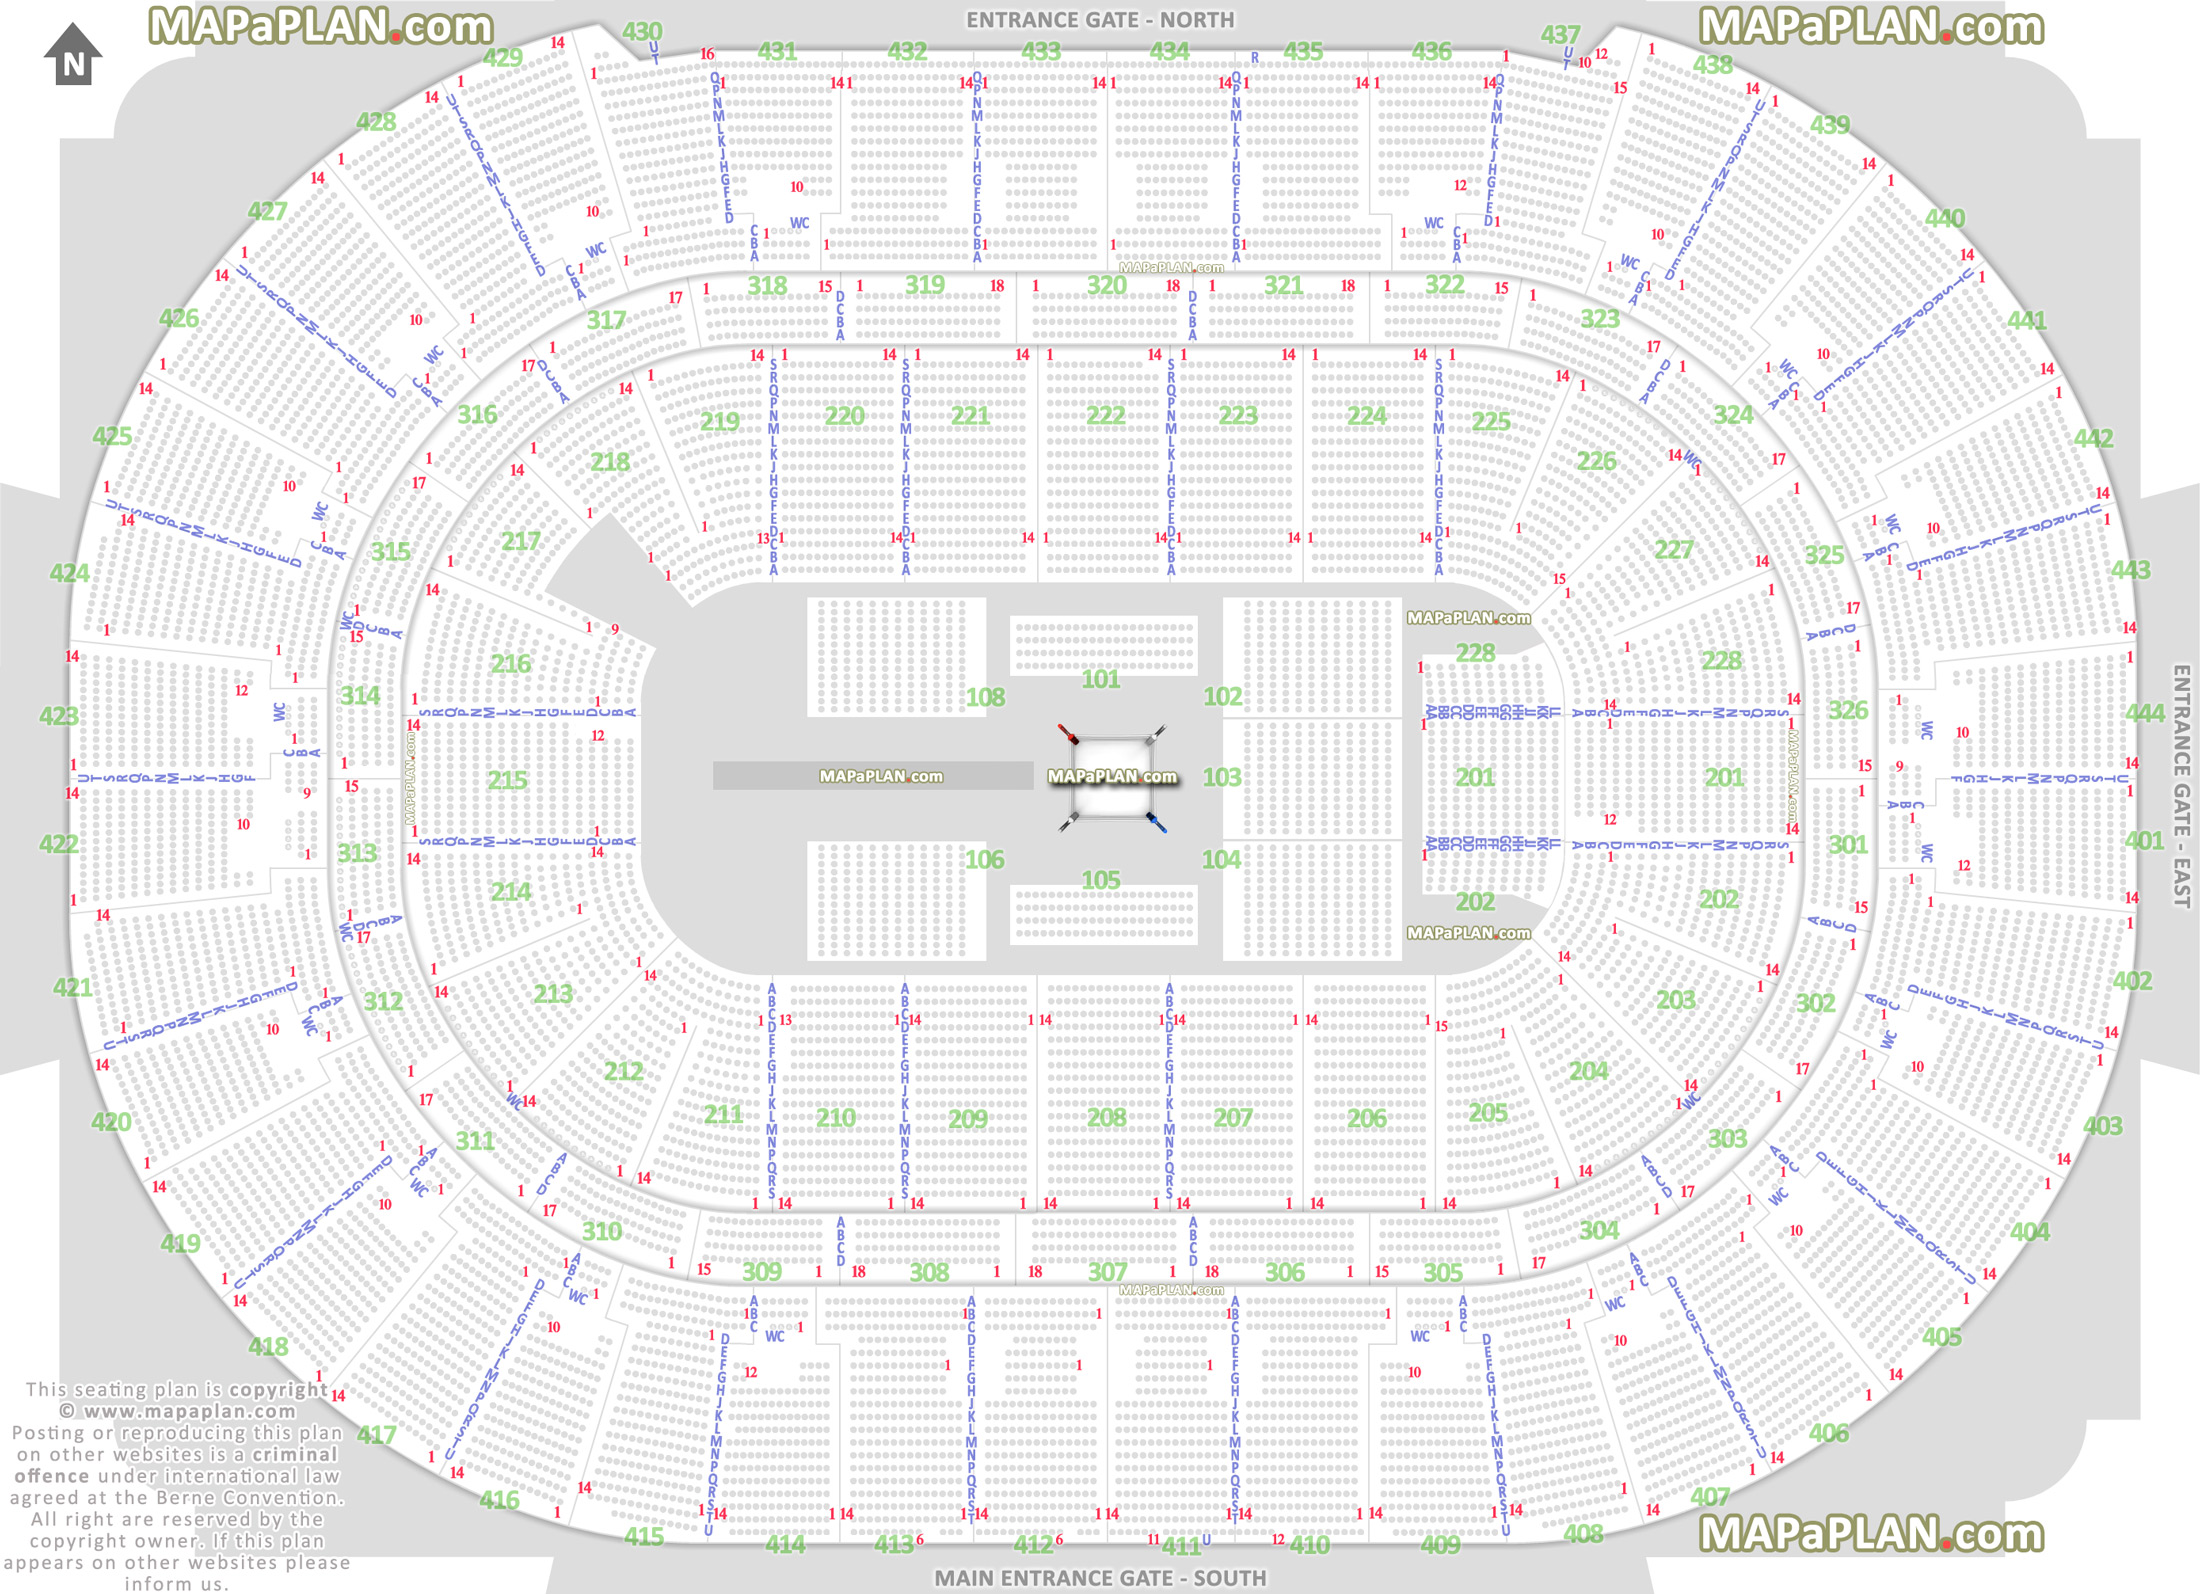 Honda Center Stadium Seating Chart